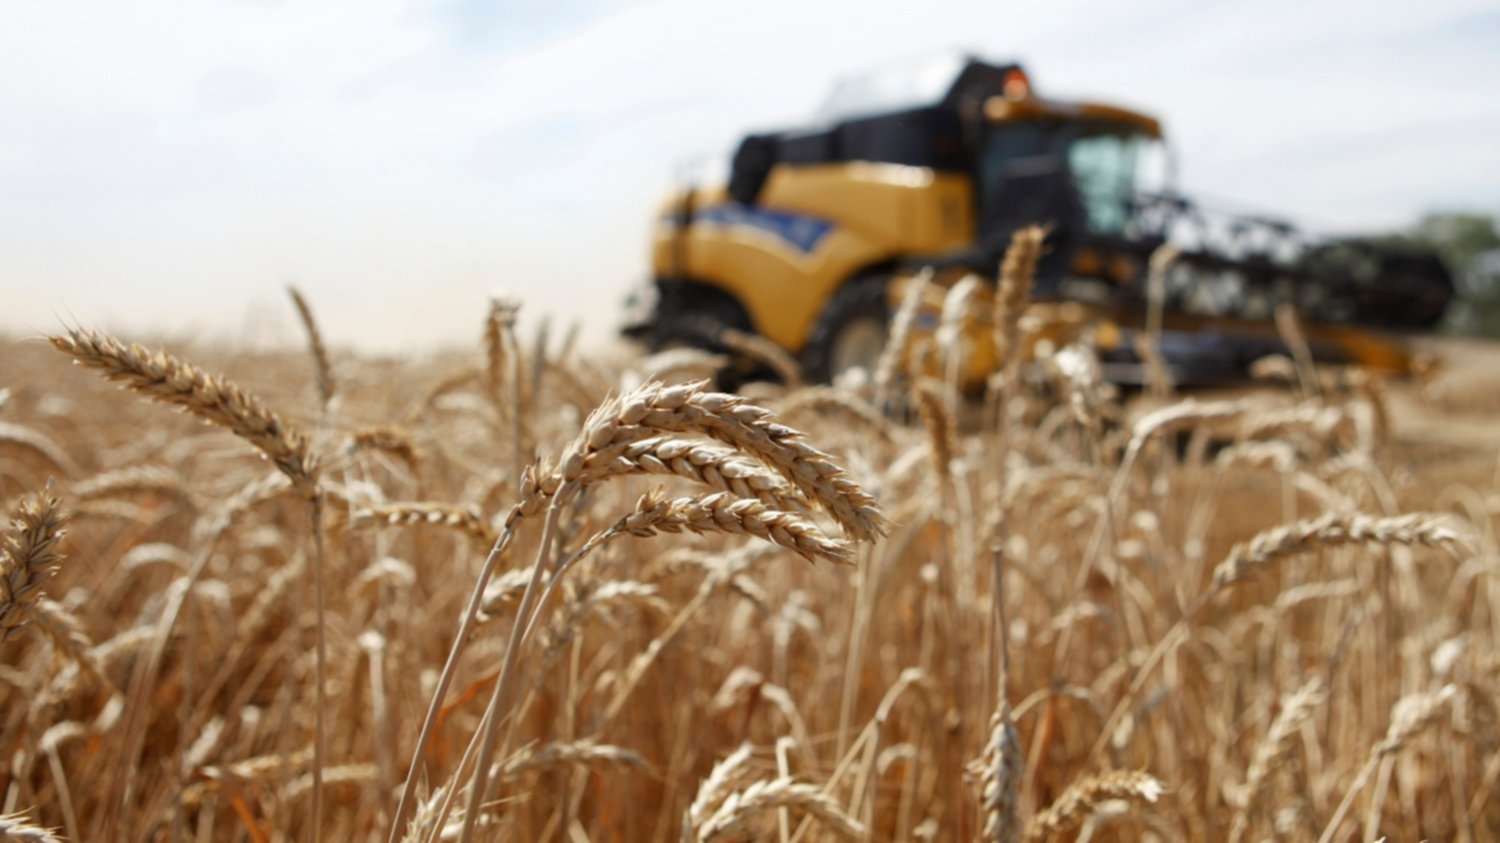 Estiman aumento de 15.6% en producción nacional de trigo panificable en el ciclo Otoño-Invierno 2018/19